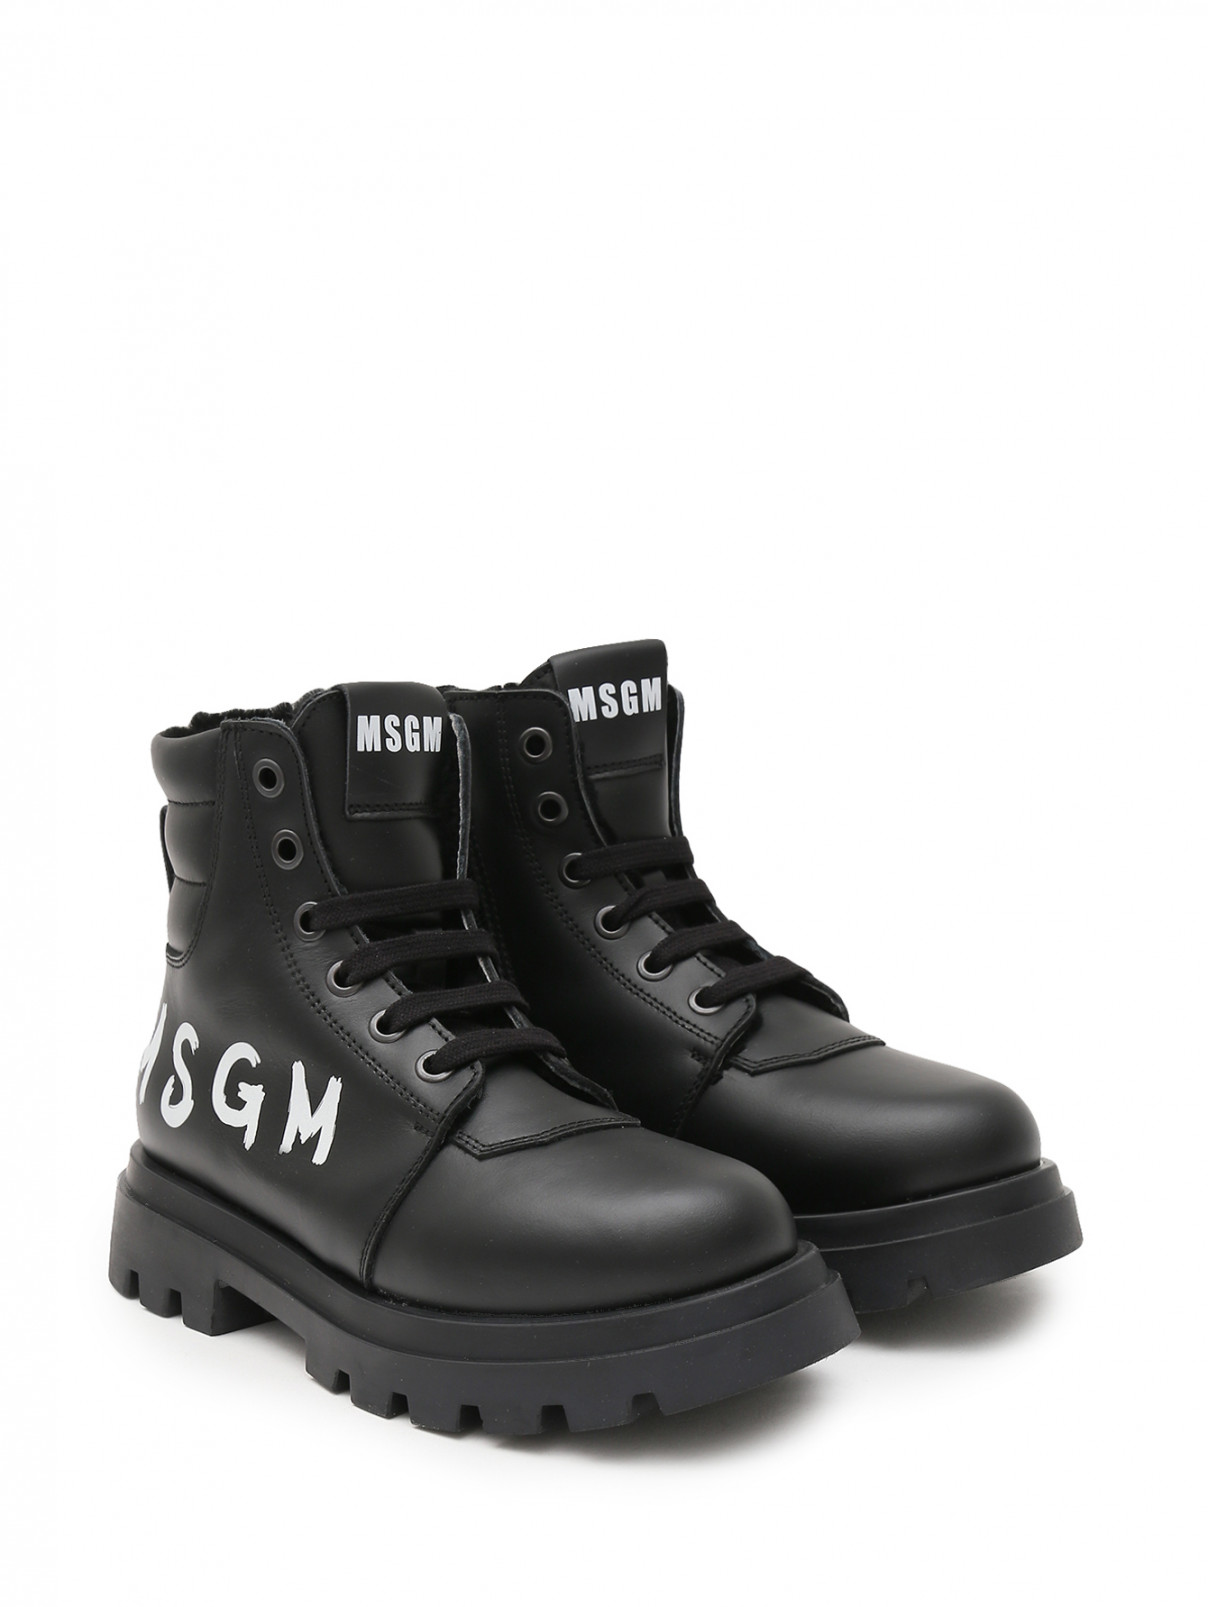 Утепленные ботинки с принтом MSGM  –  Общий вид  – Цвет:  Черный